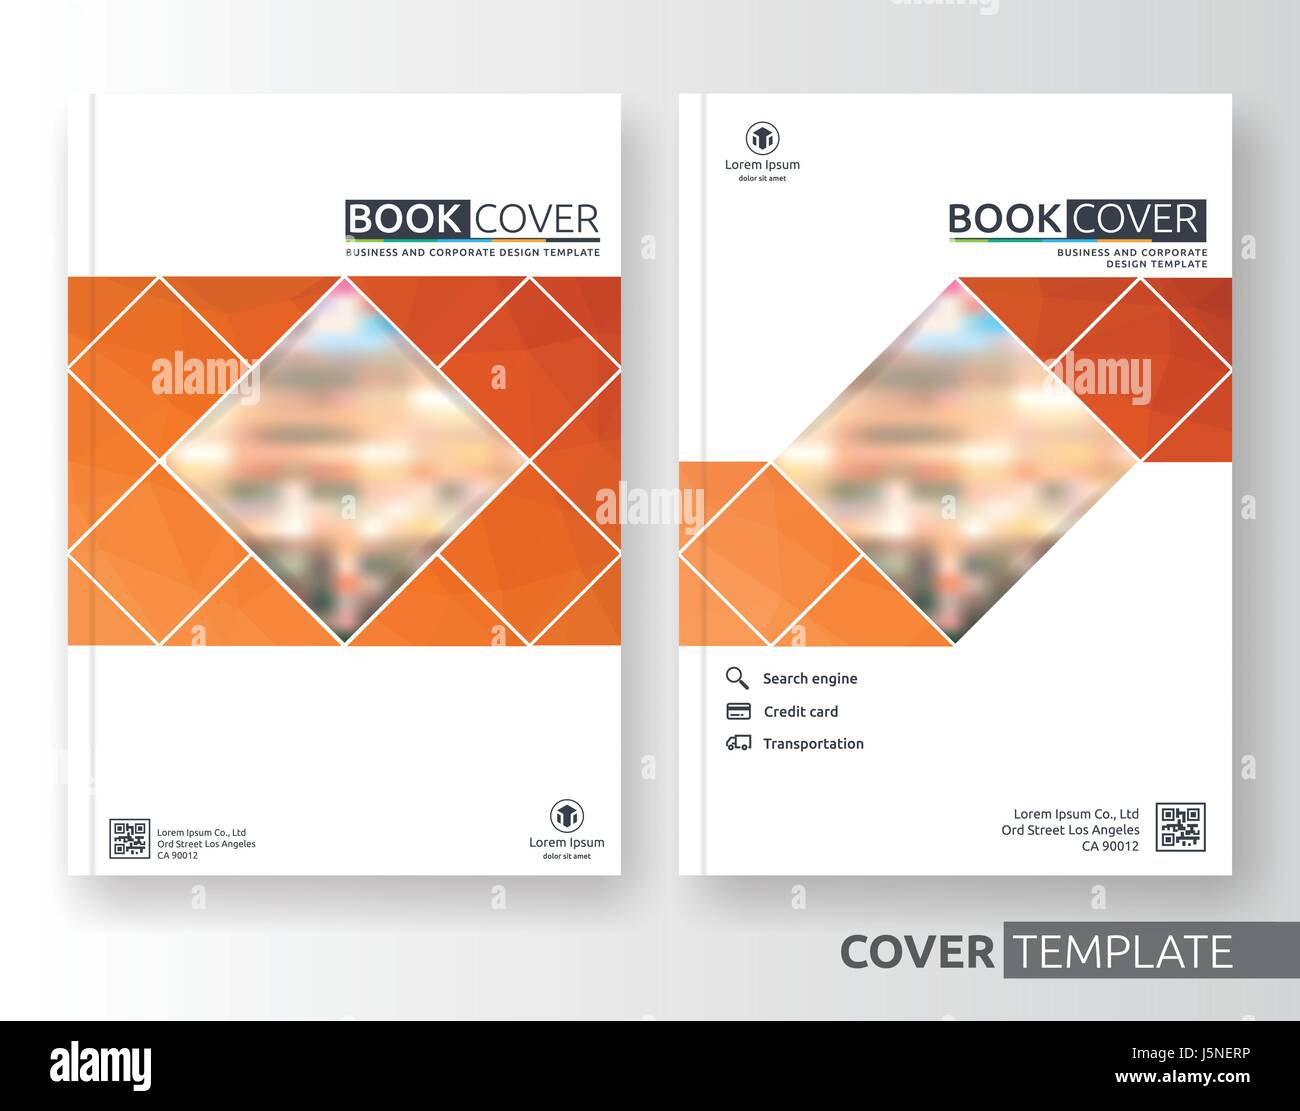 Abstrakt Business und corporate Cover-Design-Layout. Geeignet für Flyer, Broschüre, Buch-Cover und Jahresbericht. Orange-weiße Farbe A4 Größe templa Stock Vektor